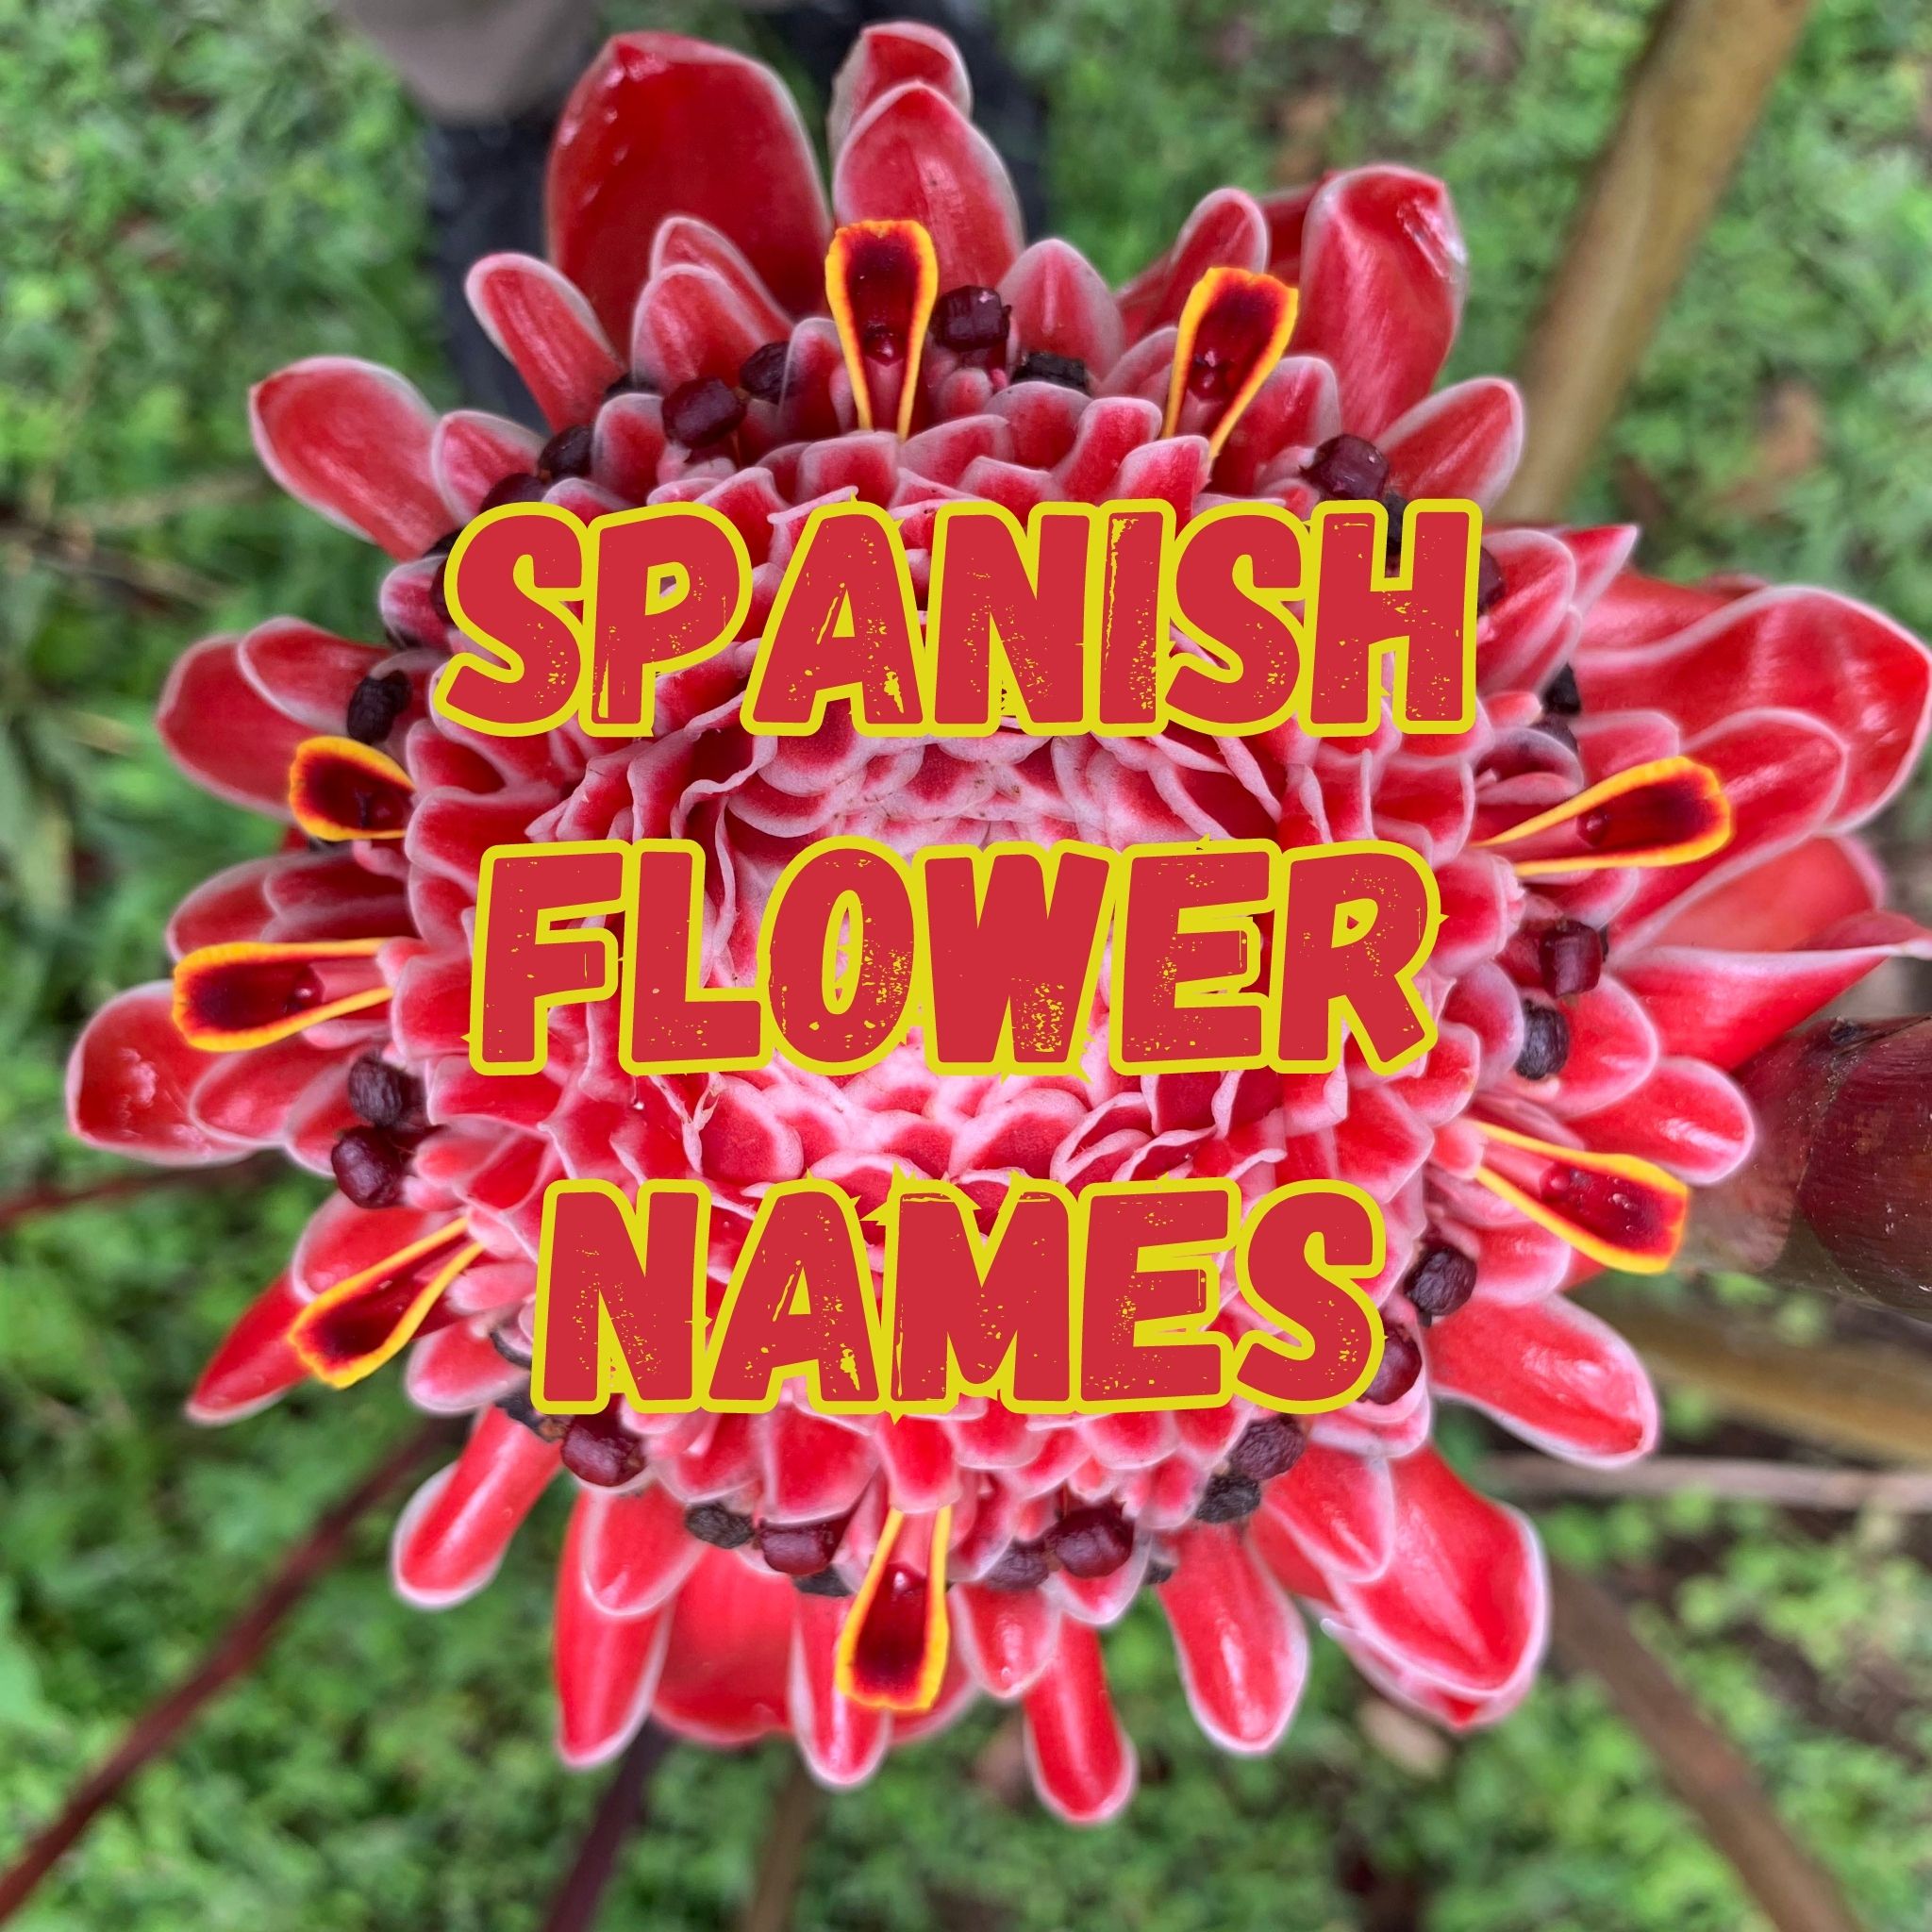 Spanish Flower Names 150 Flowers In